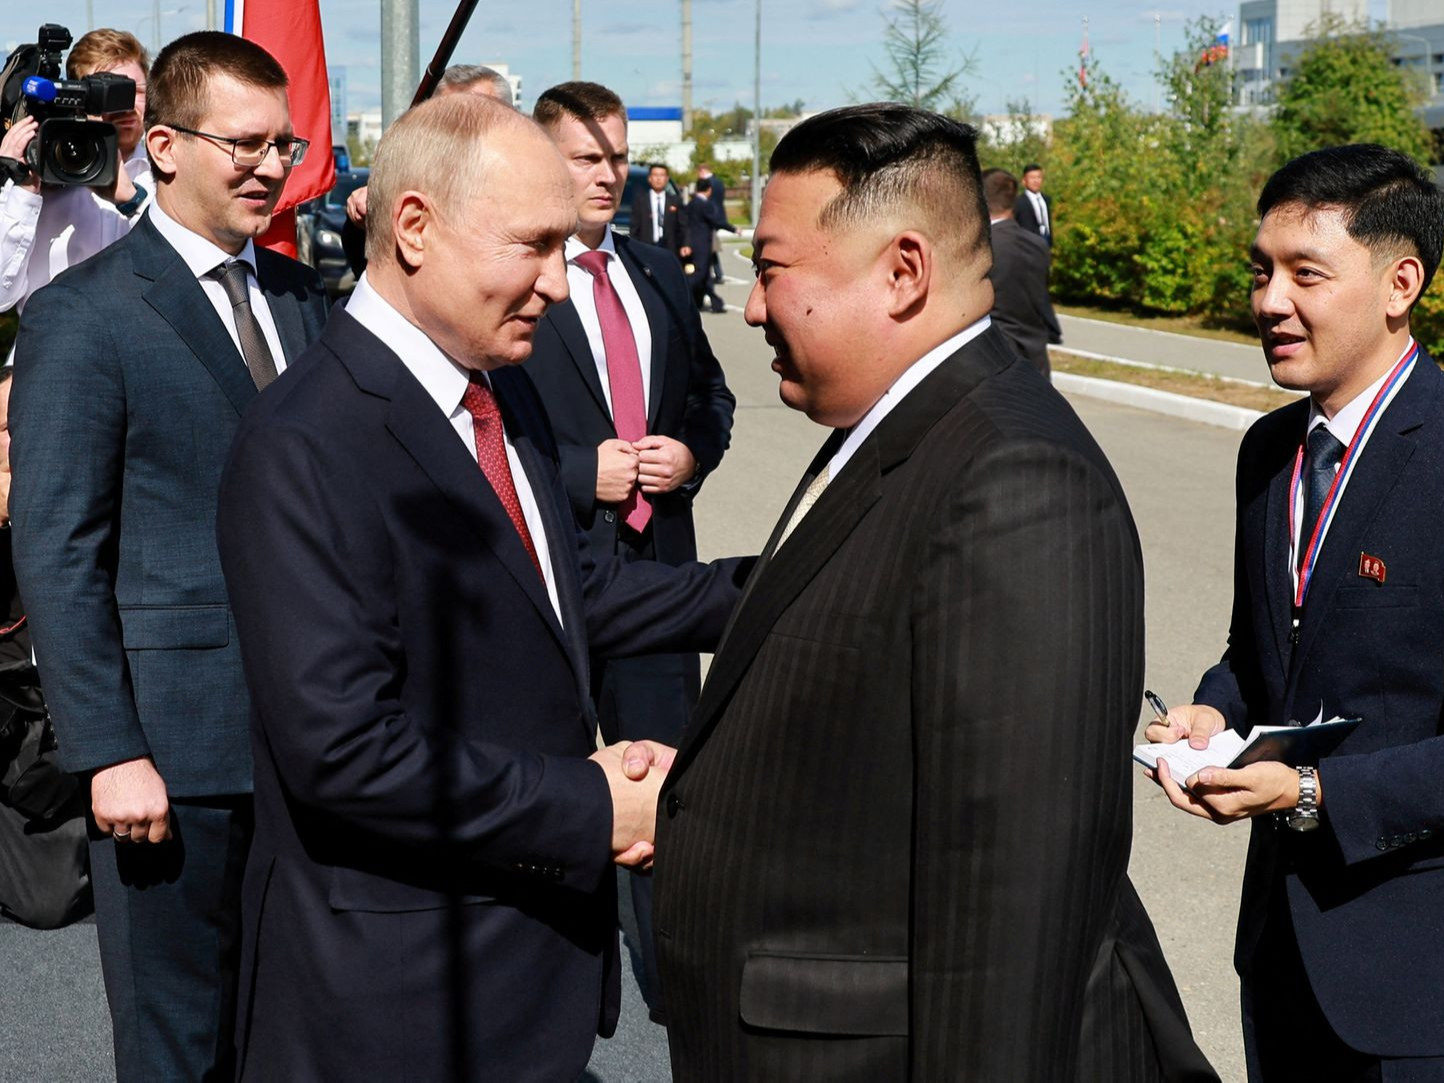 ОХУ, Хойд Солонгос хоёр төлбөр тооцооны шинэ систем хөгжүүлэхээр тохиролцжээ